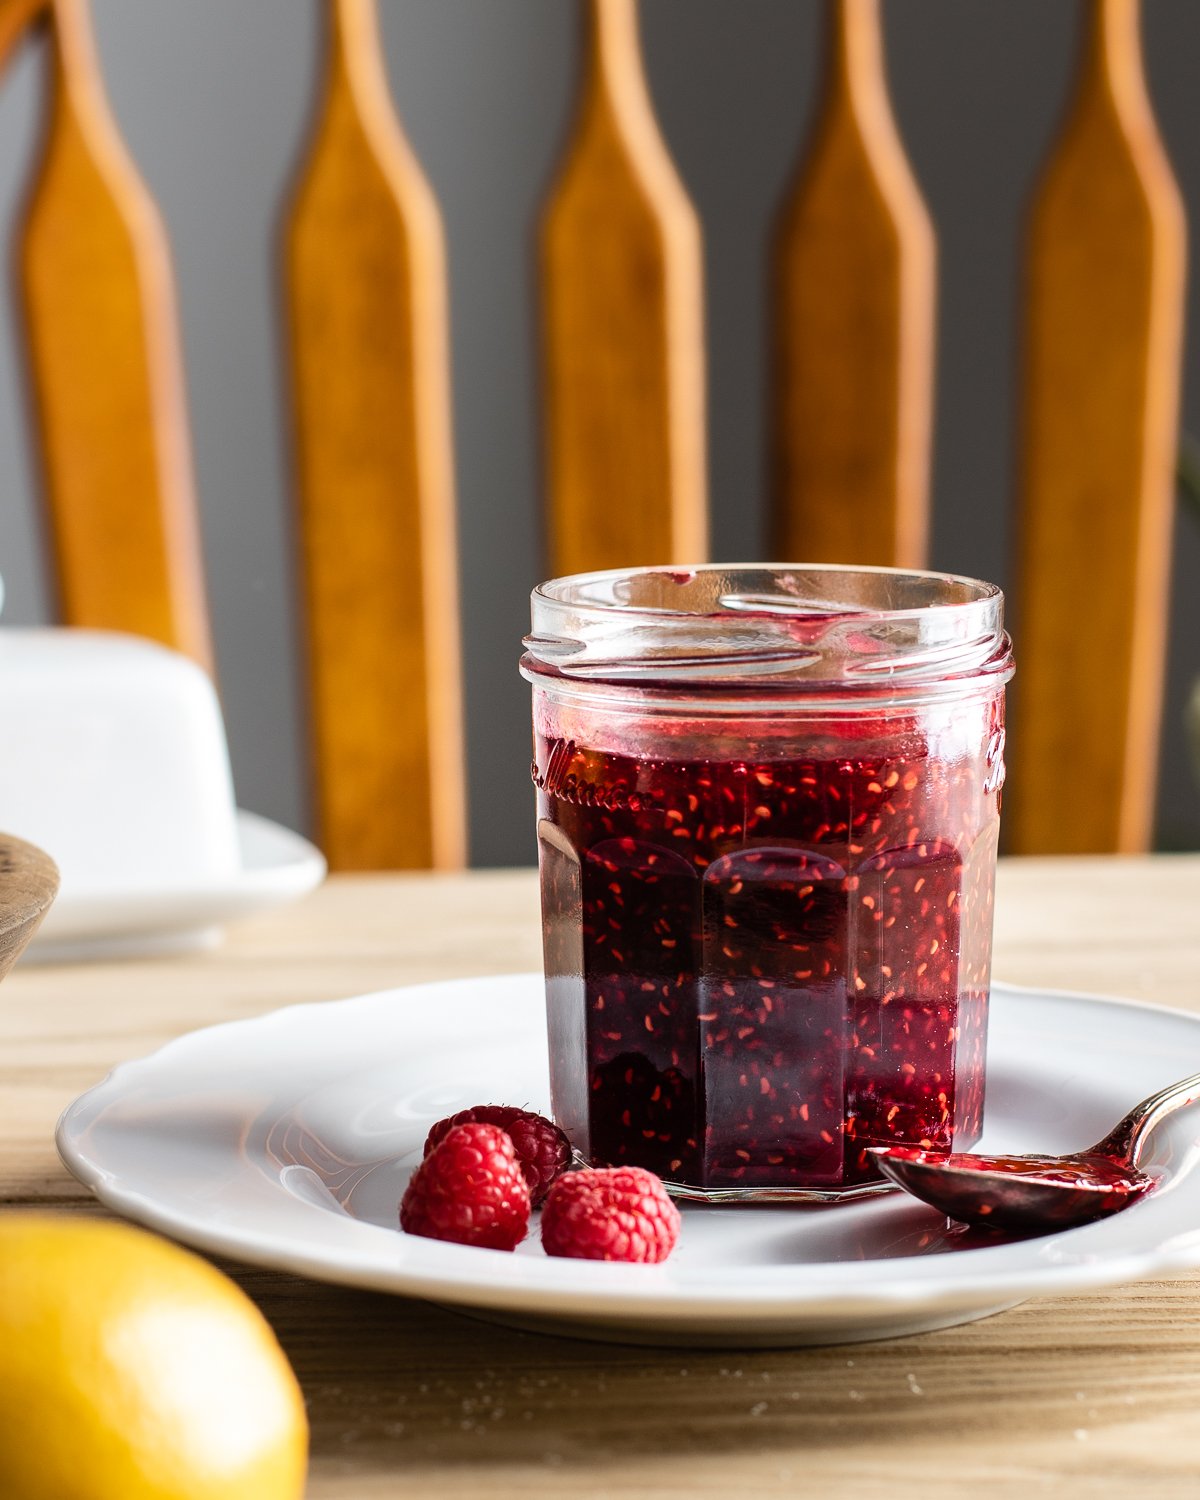 raspberry preserves in a jar.